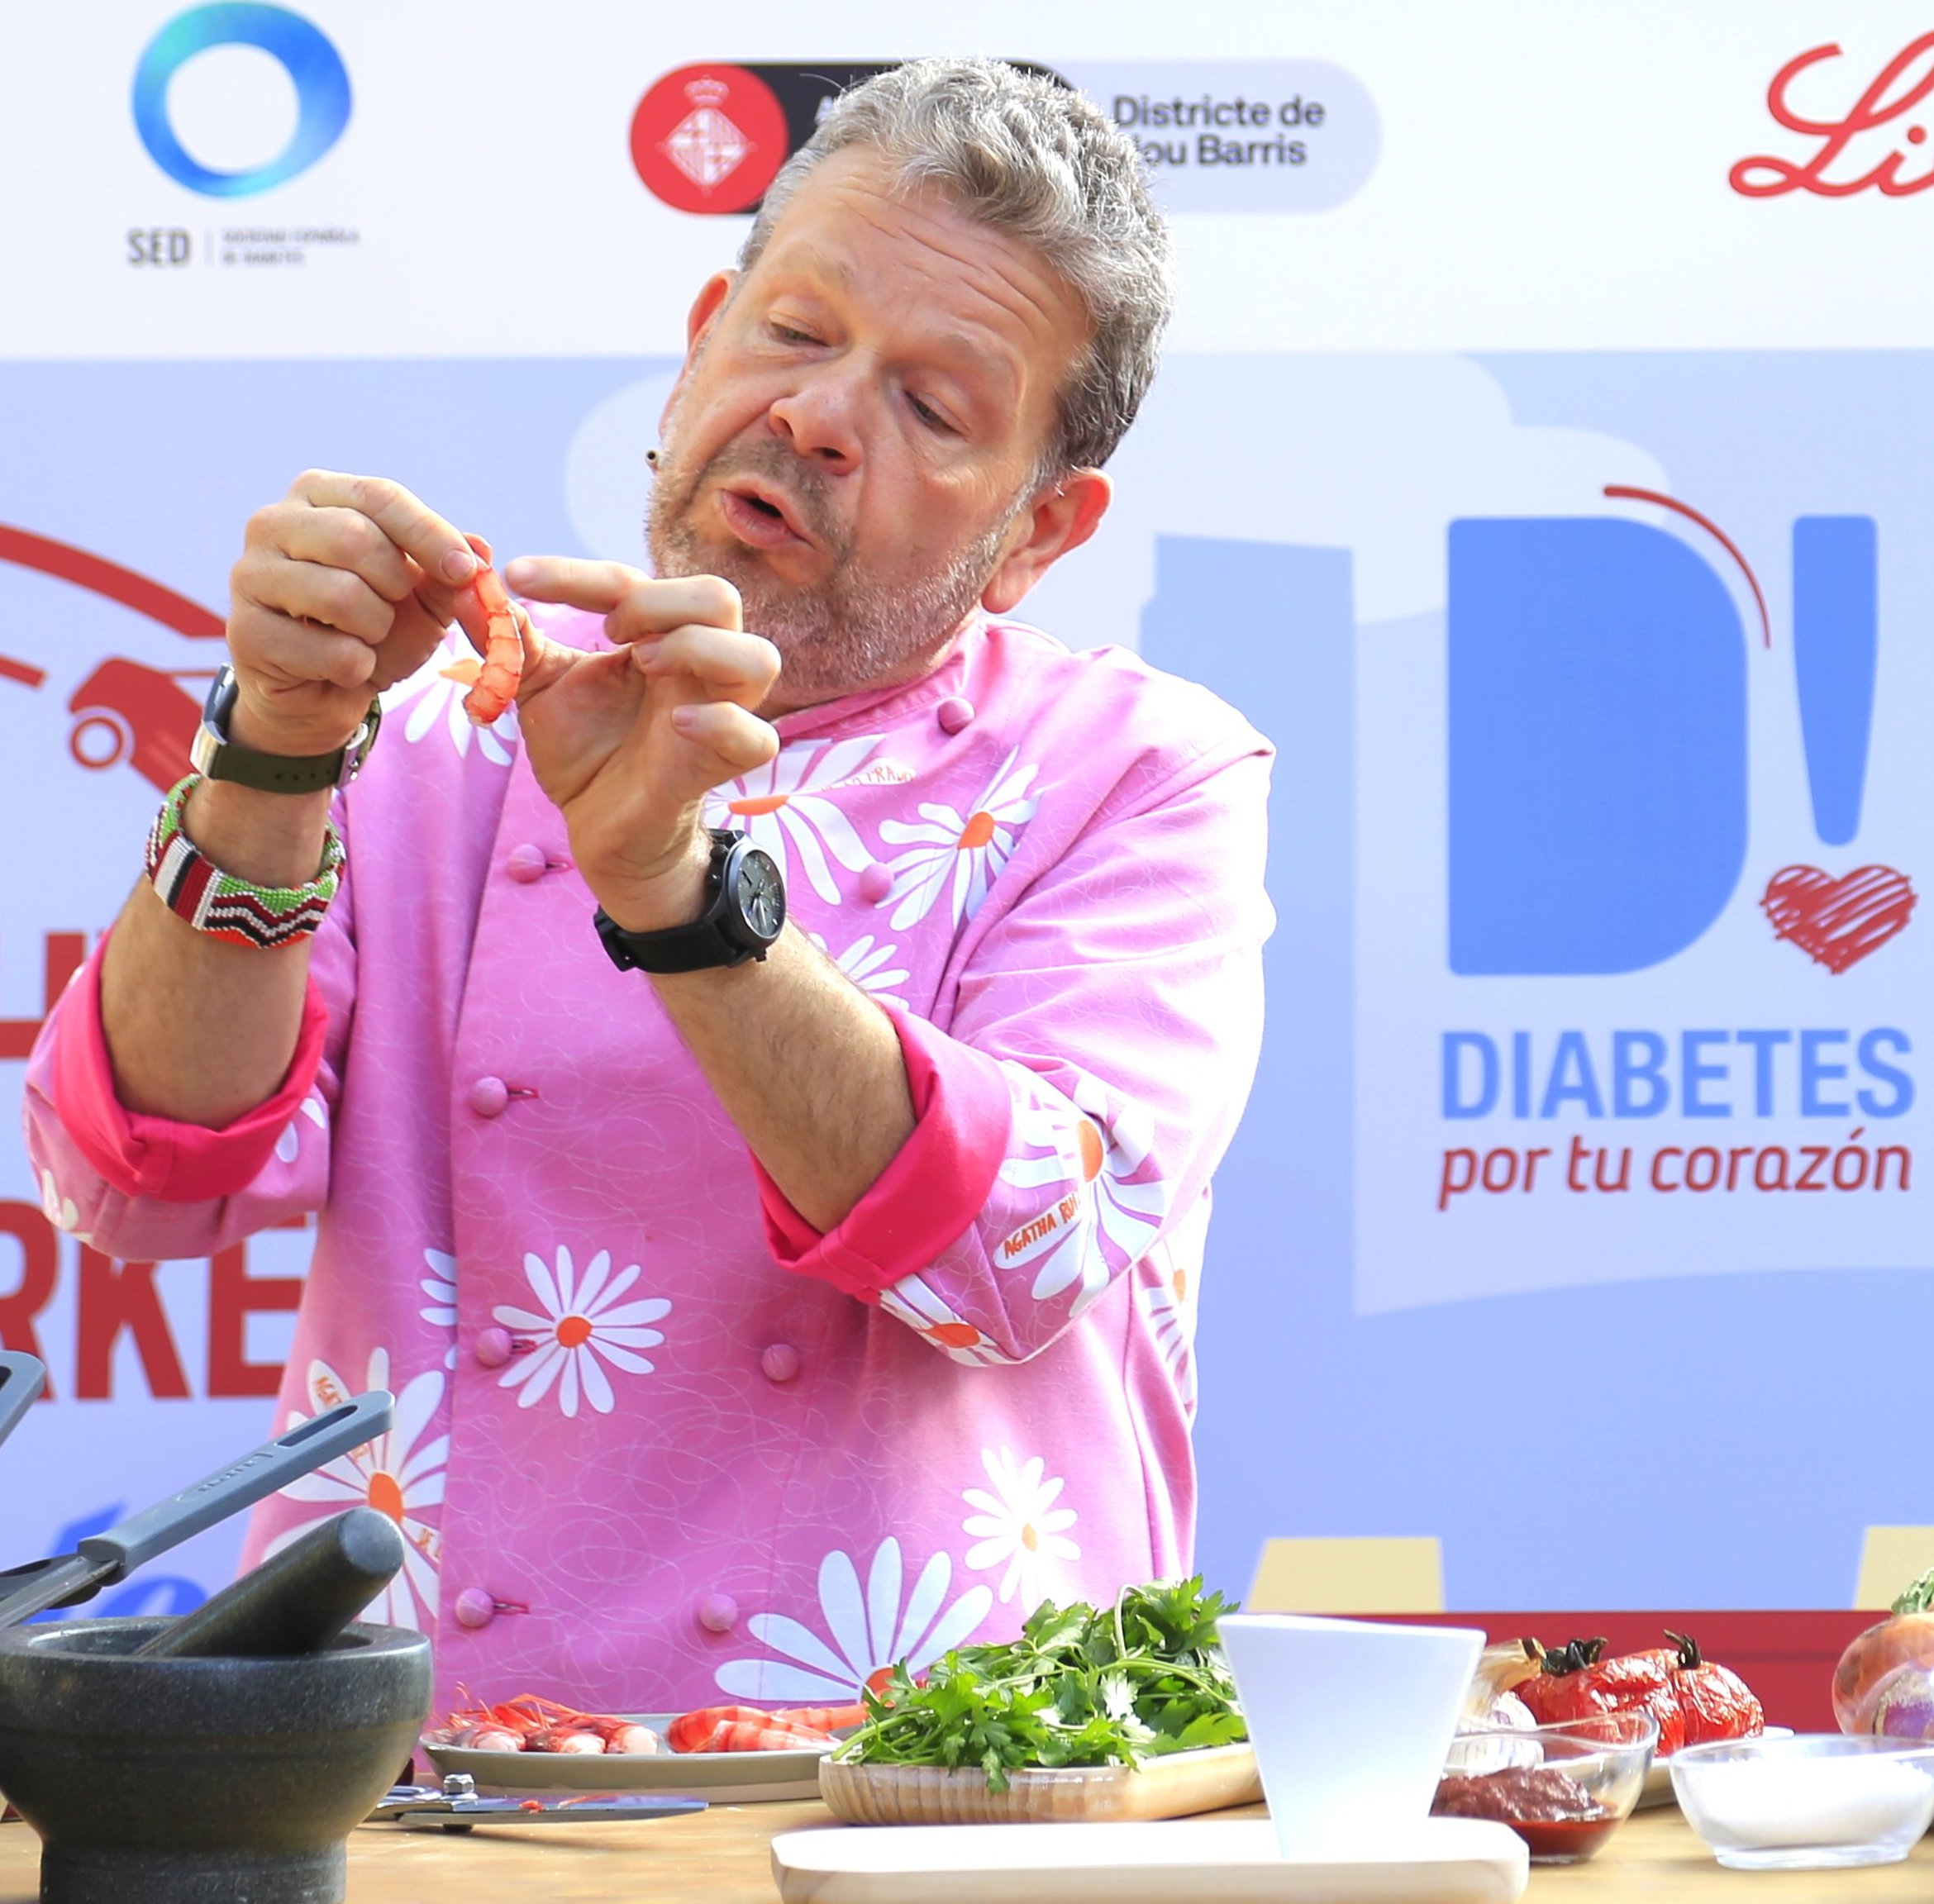 El chef Alberto Chicote en Barcelona: descubrimos su pasión desconocida